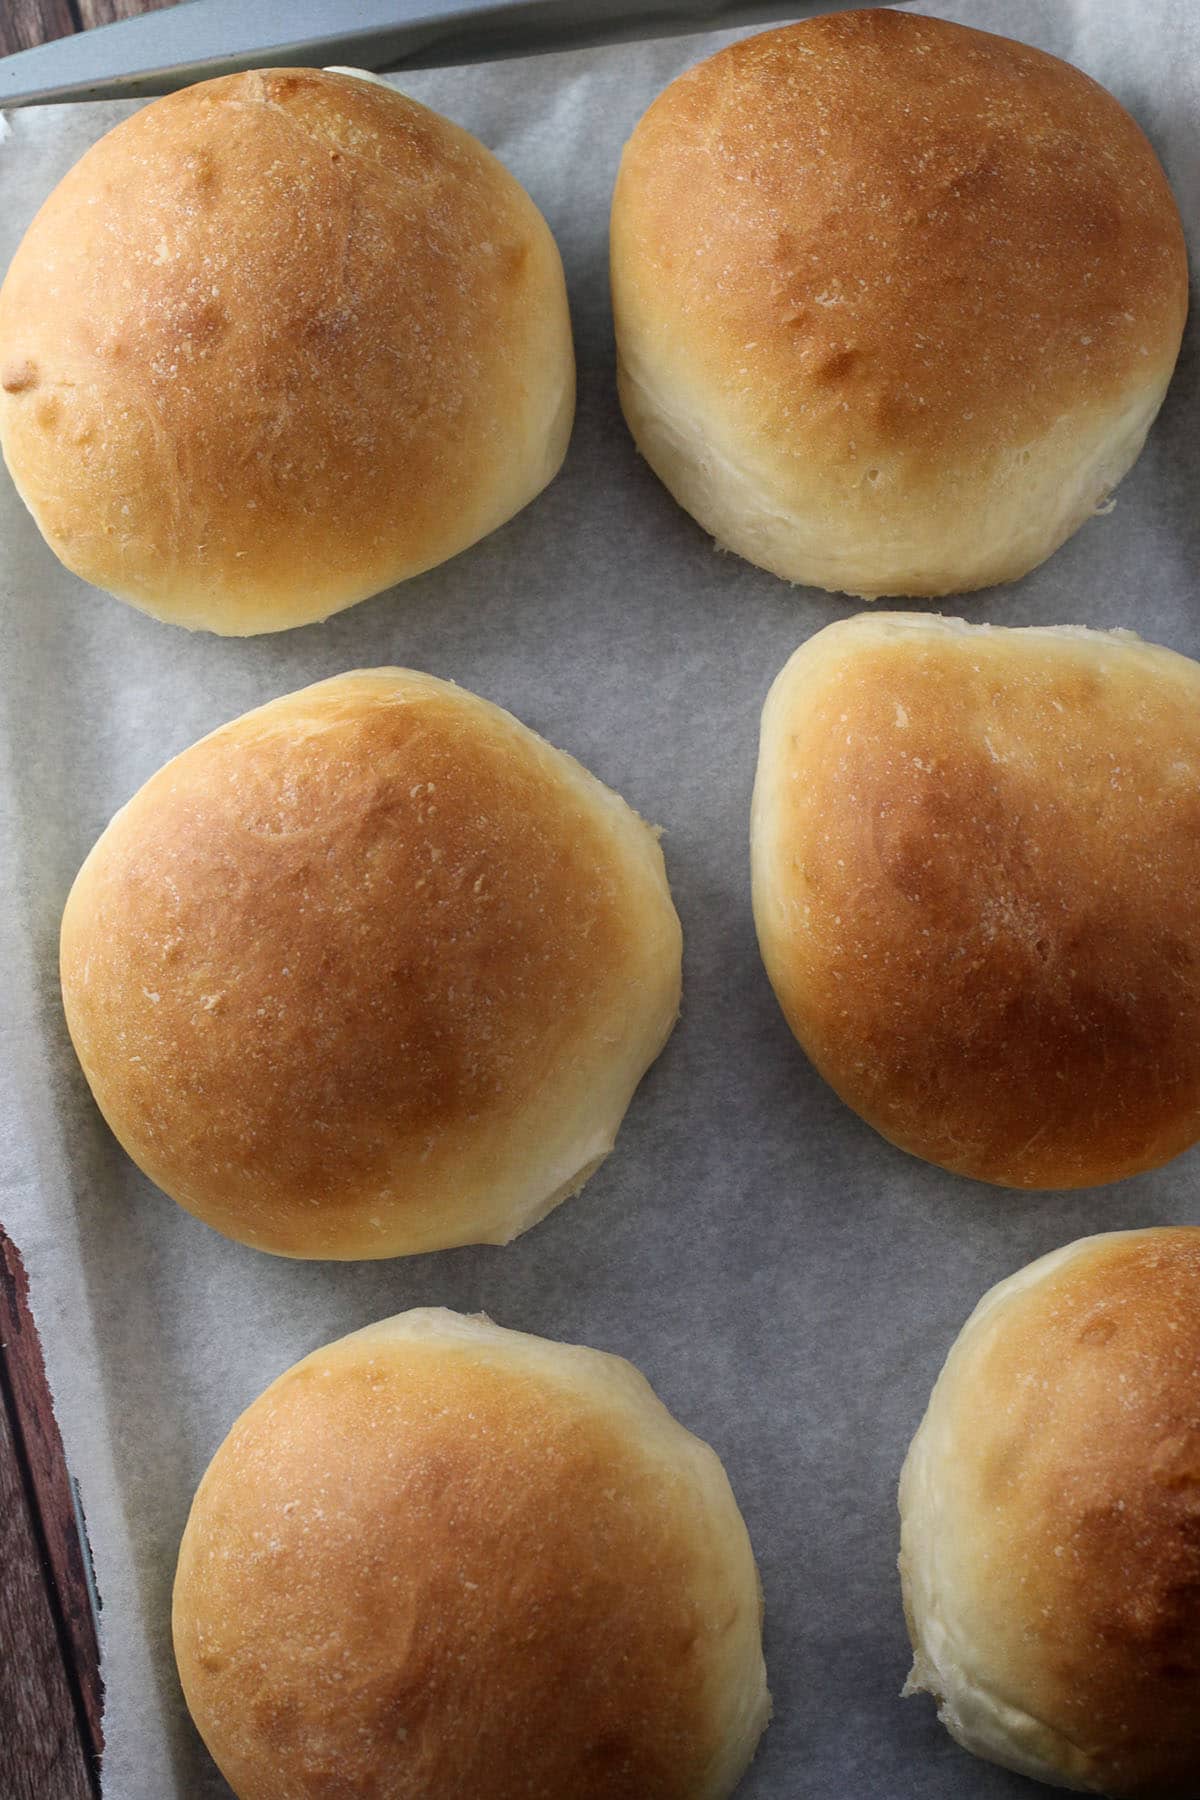 The baked buns for the Korean Cream Cheese Garlic Bread.